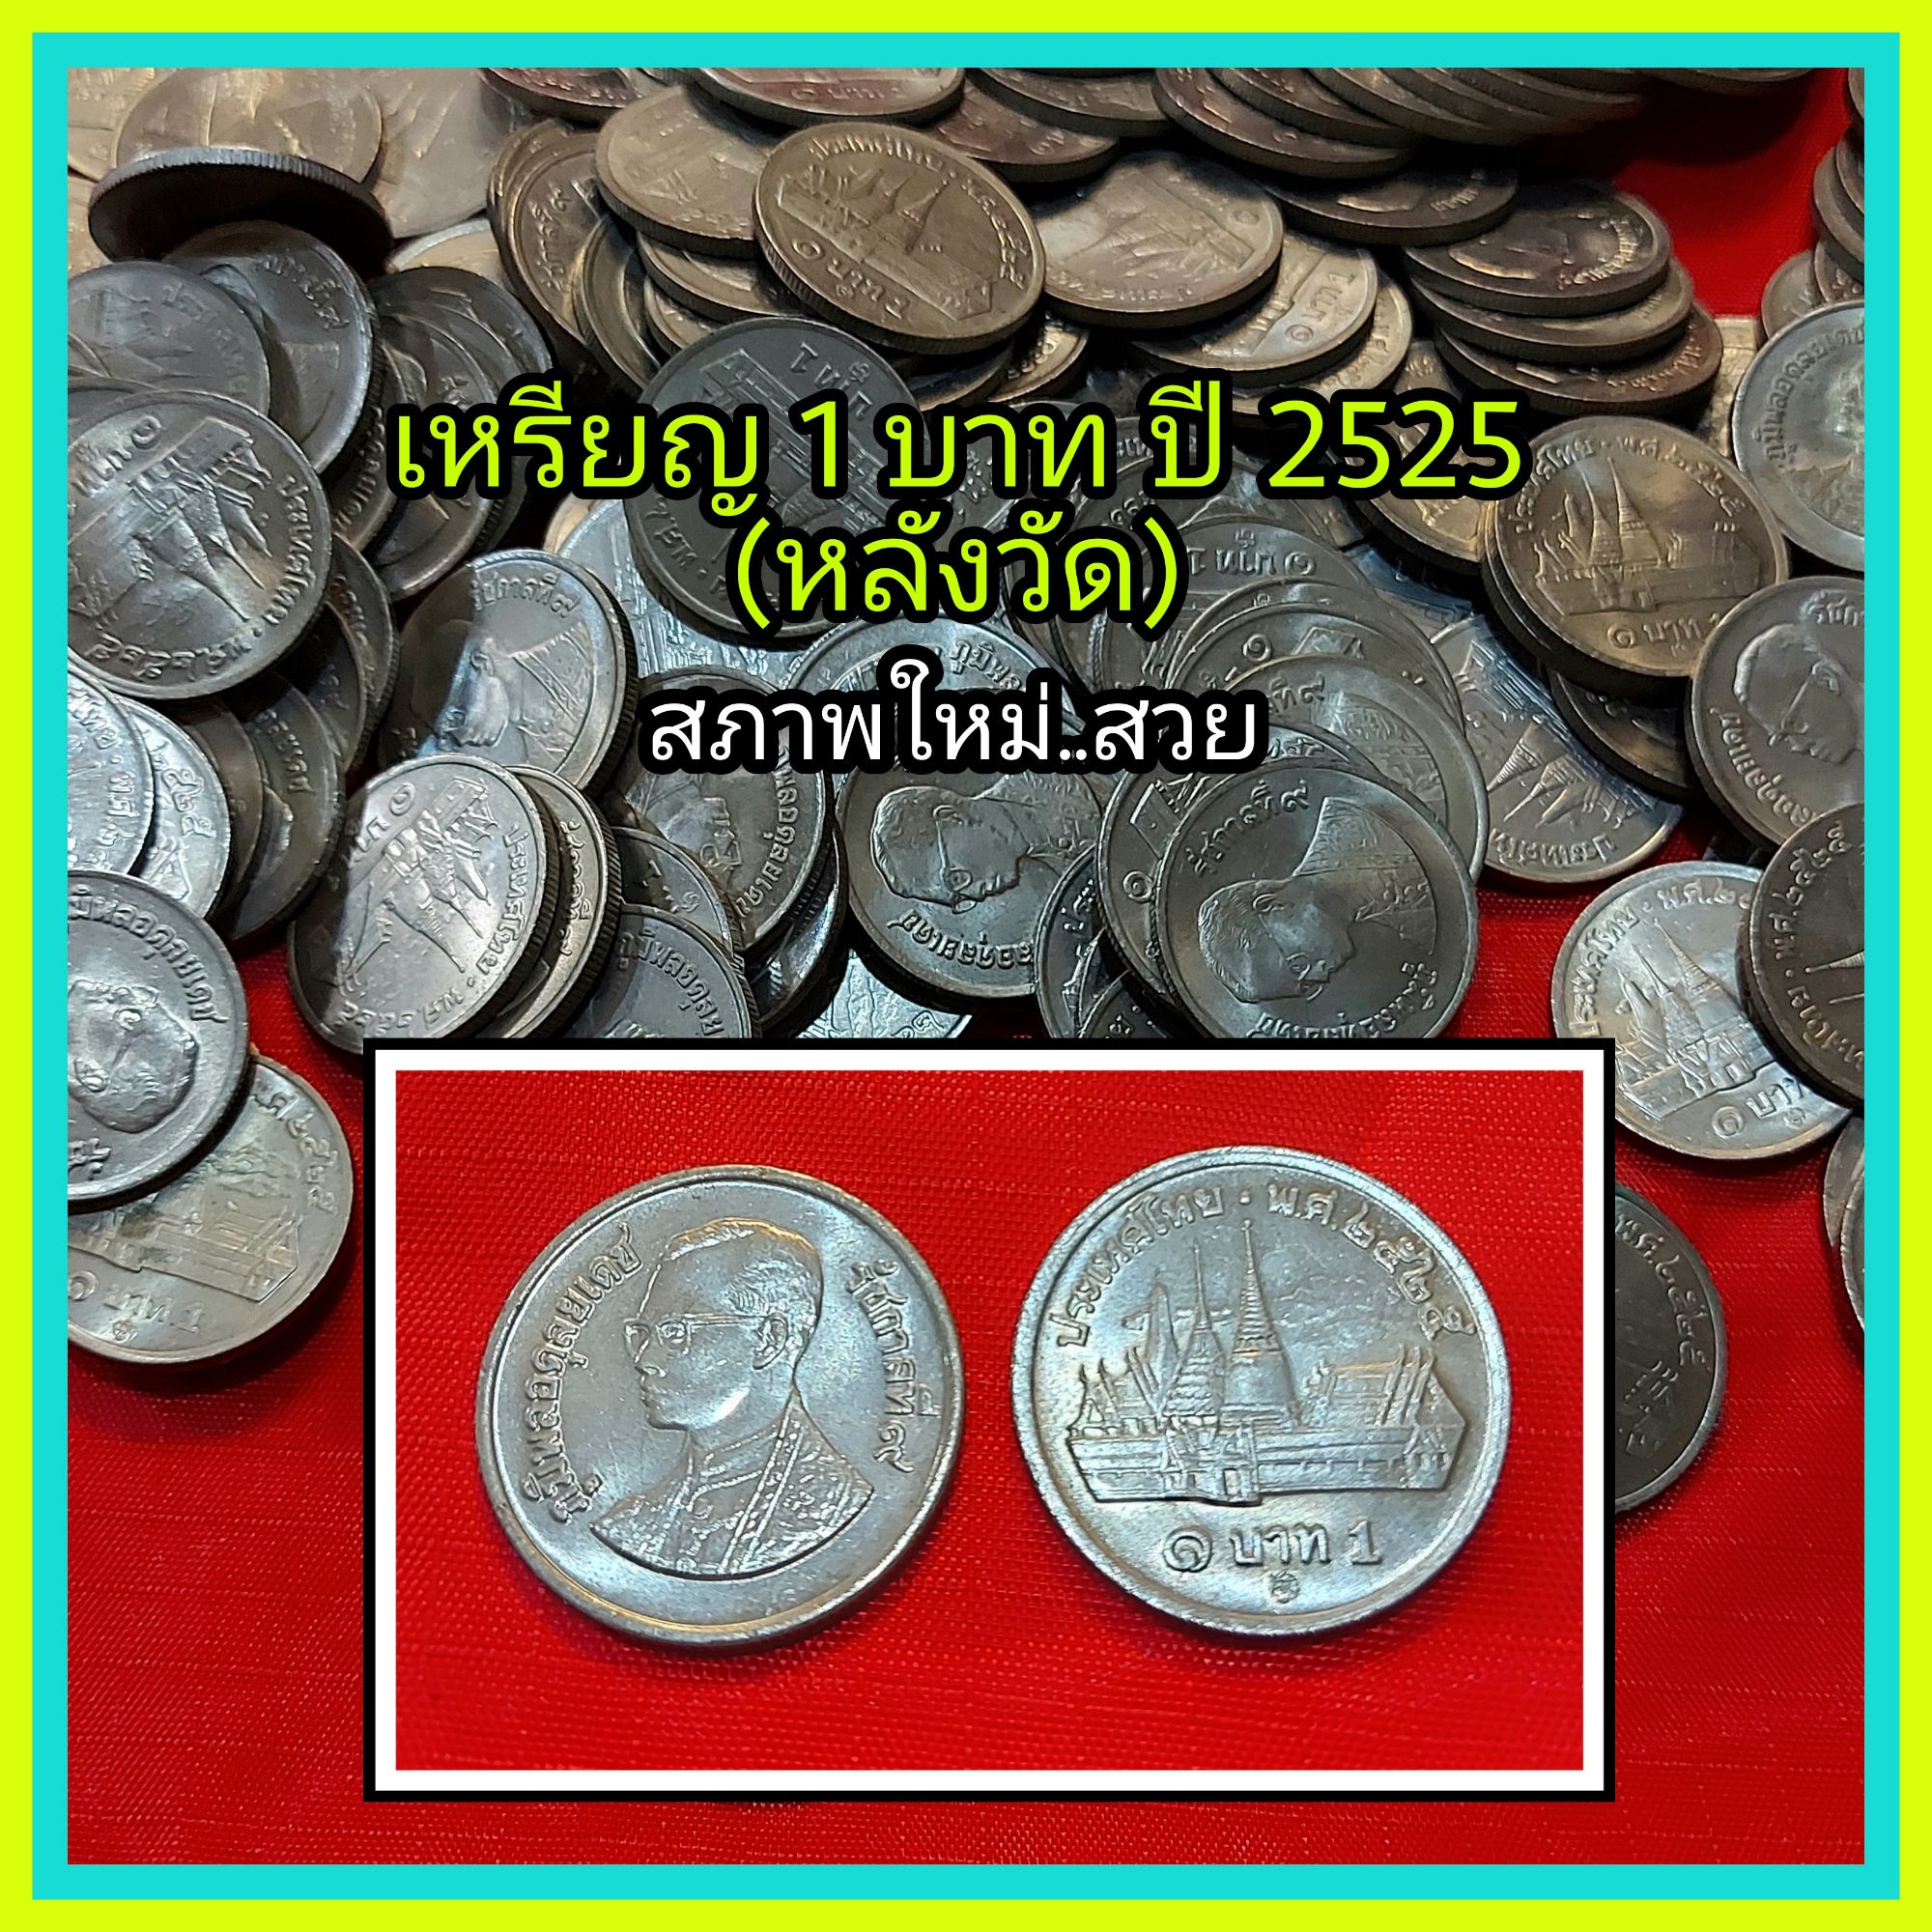 เหรียญร.9 ชนิด 1 บาท หลังวัด ปีพ.ศ.2525 สภาพ : ไม่ผ่านการใช้งาน -  Banknotesjj - Thaipick